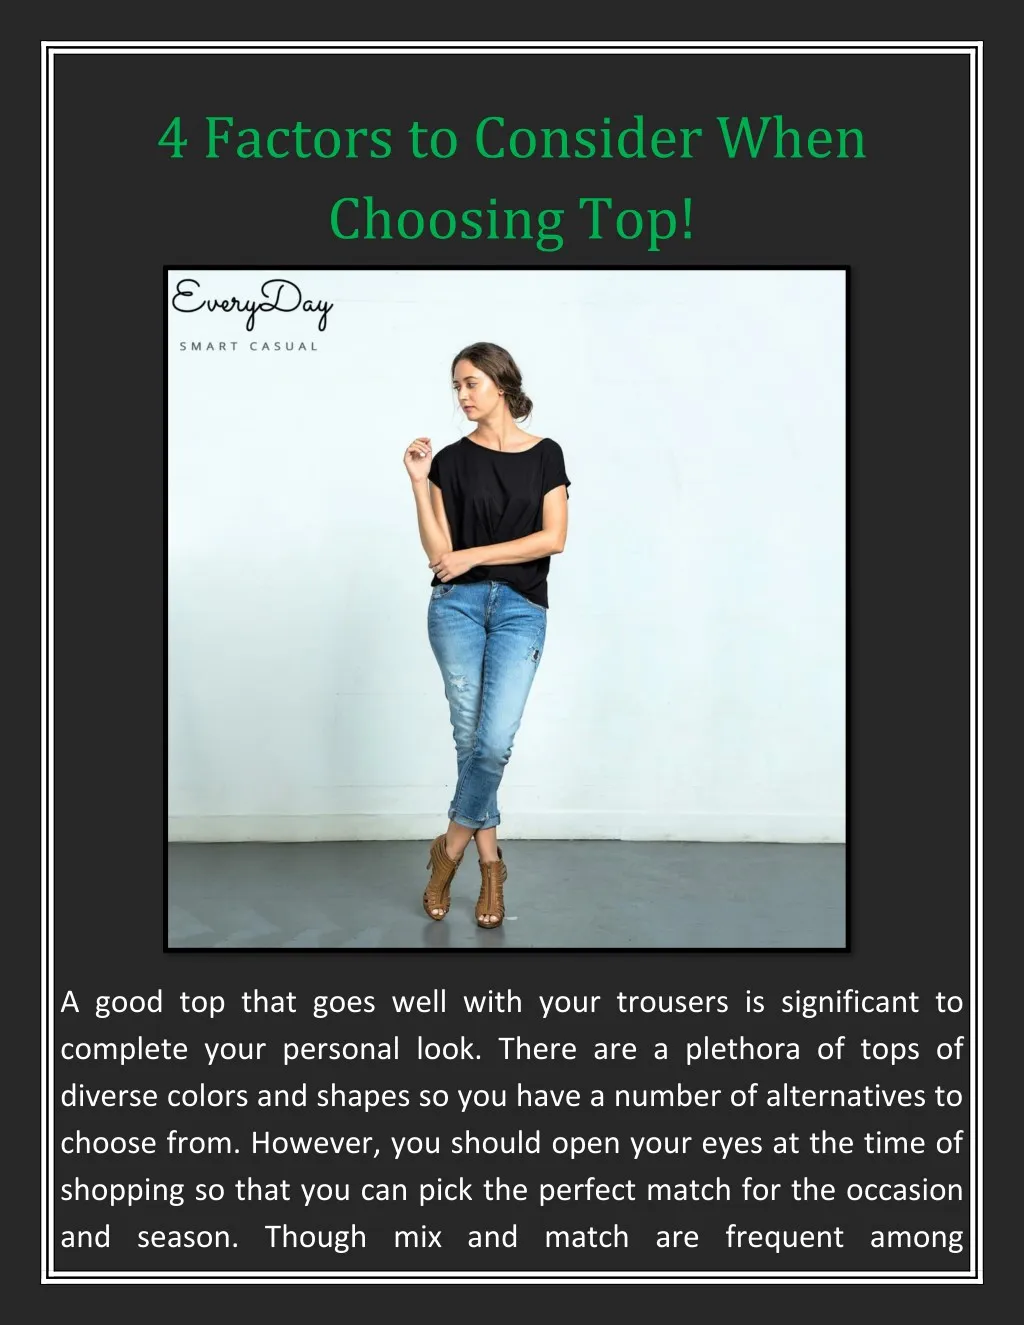 4 factors to consider when choosing top